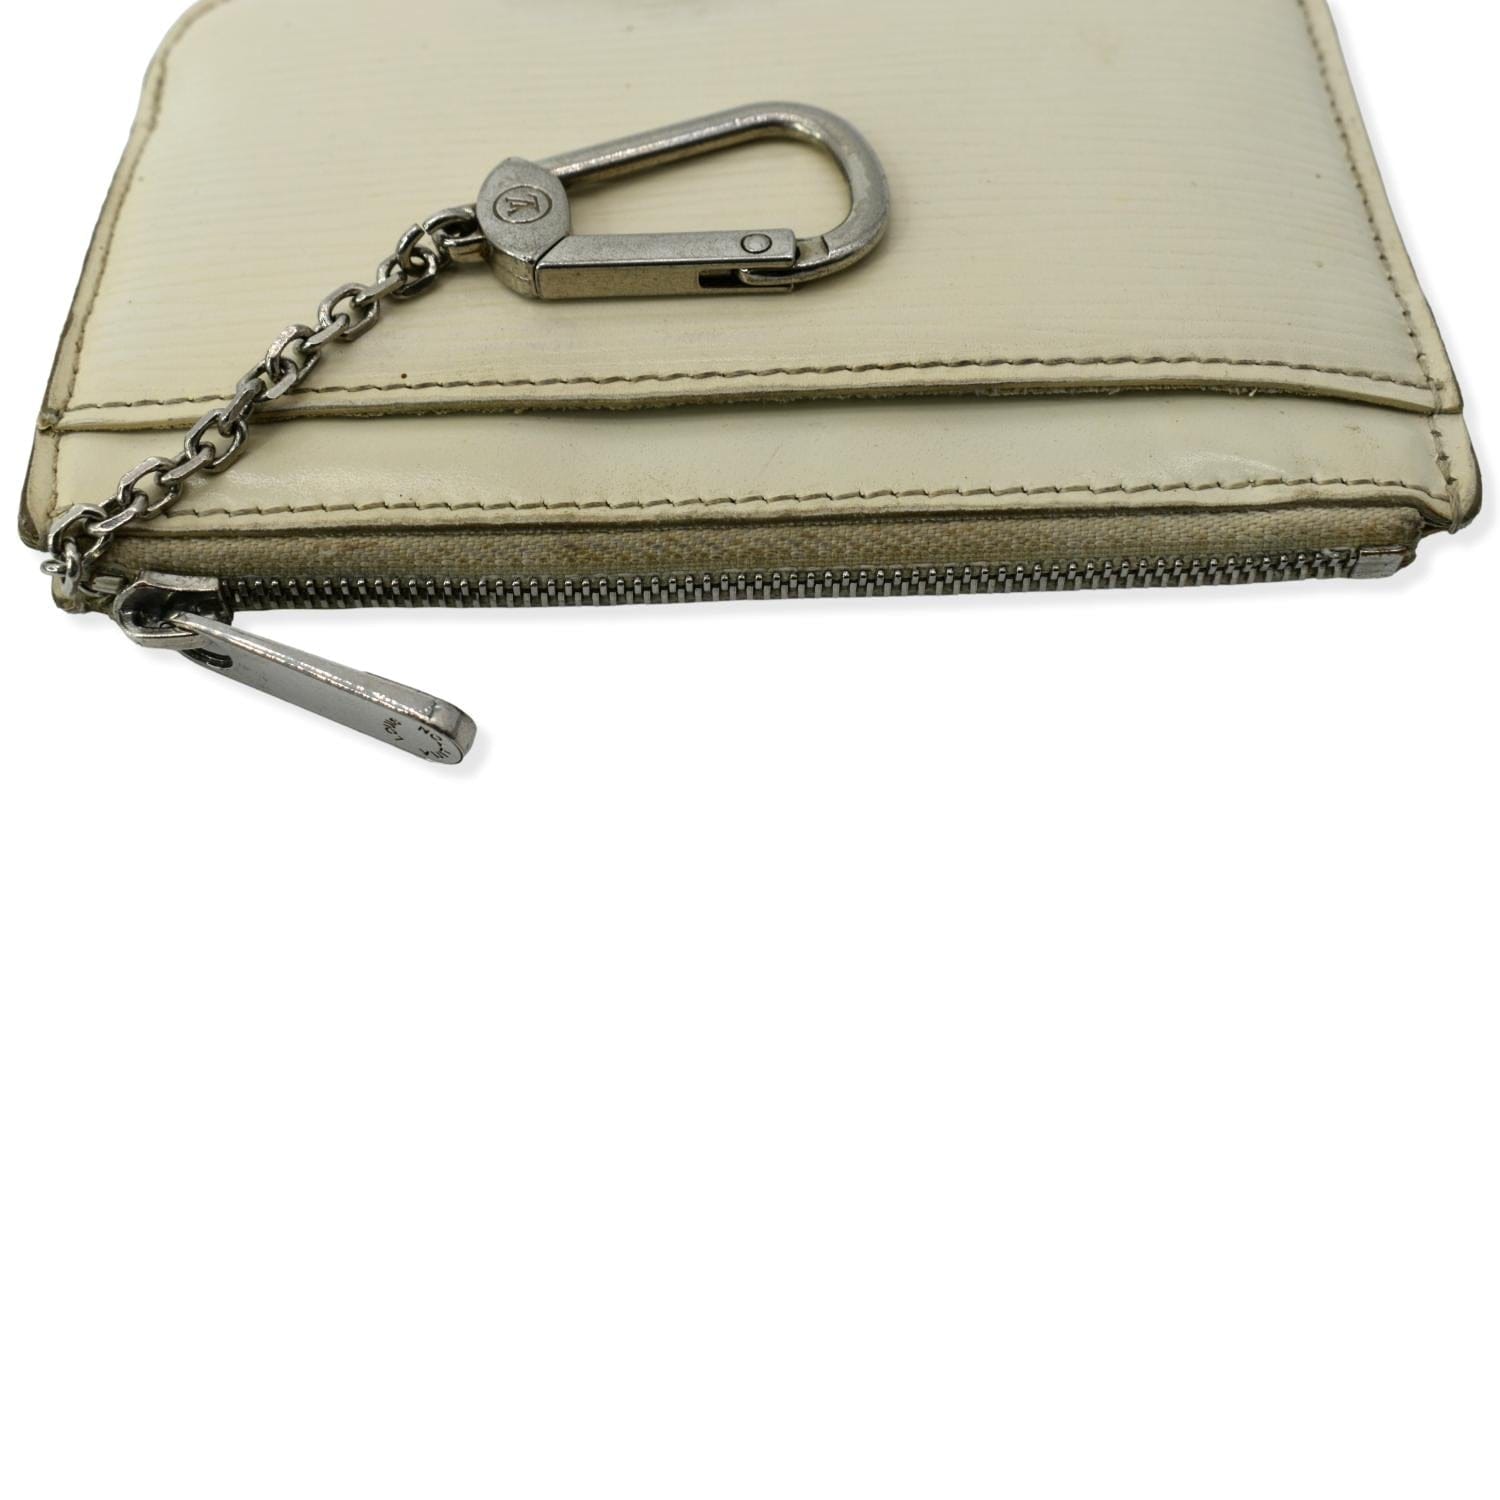 Louis Vuitton EPI Leather Key Pouch Pochette Cles